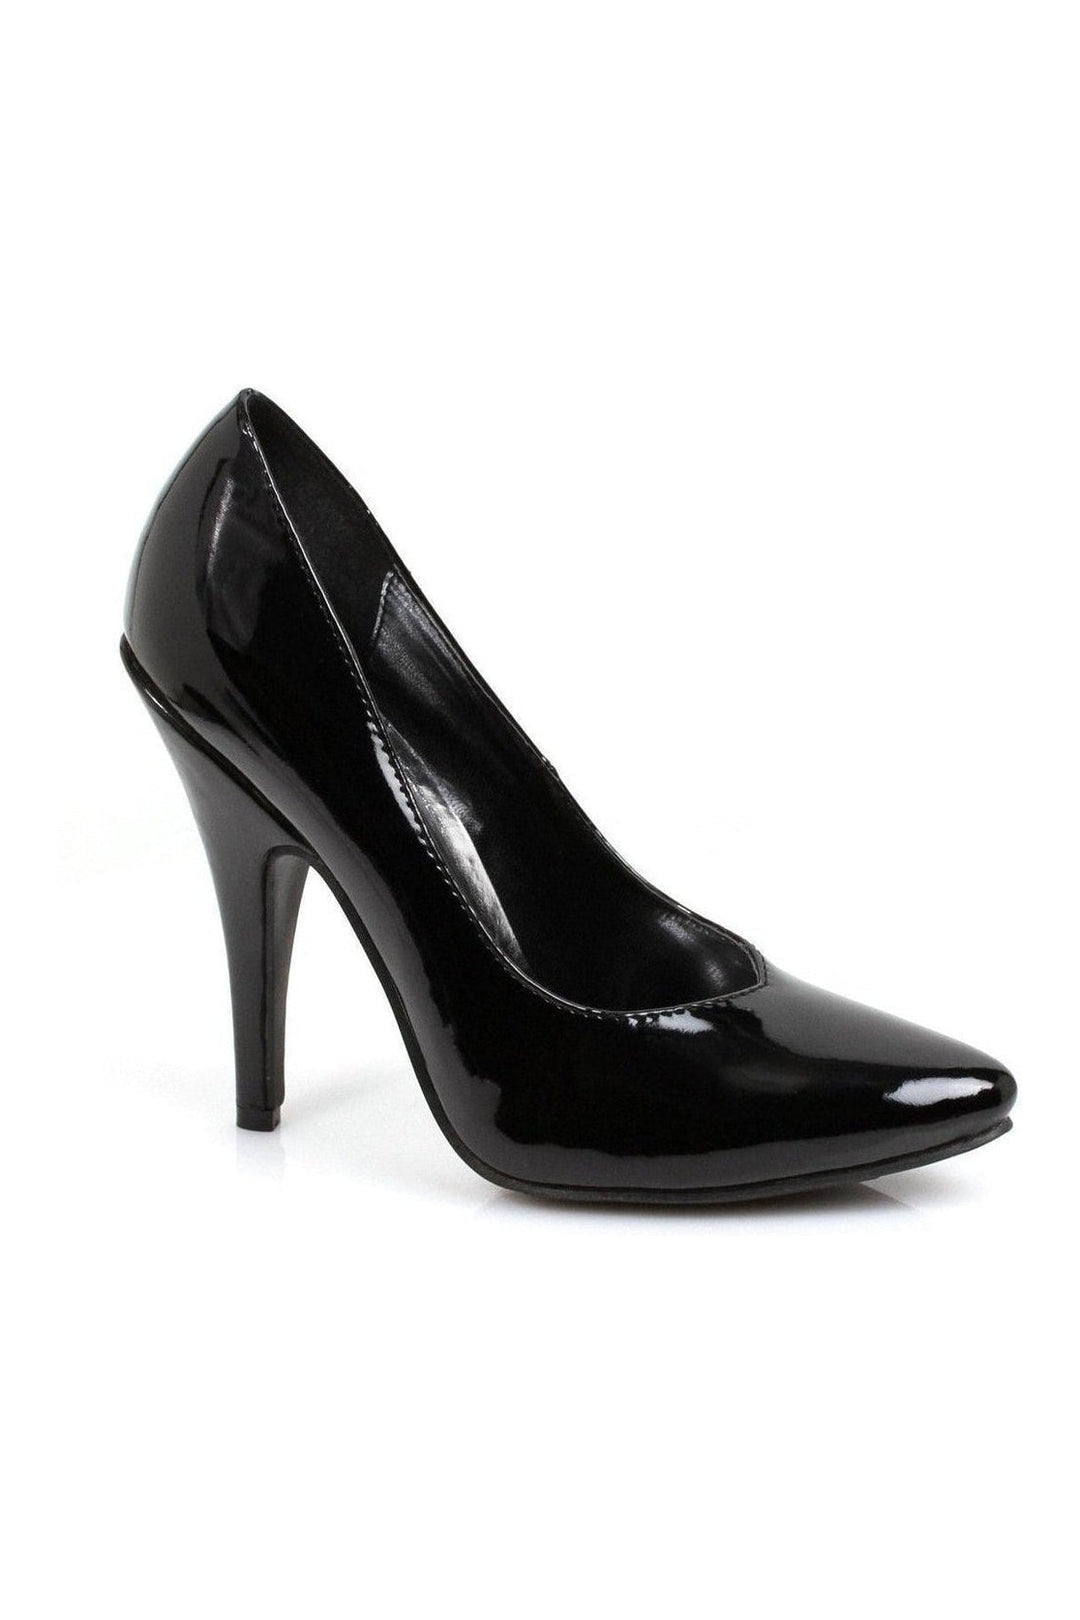 8220 Pump | Black Patent-Ellie Shoes-SEXYSHOES.COM